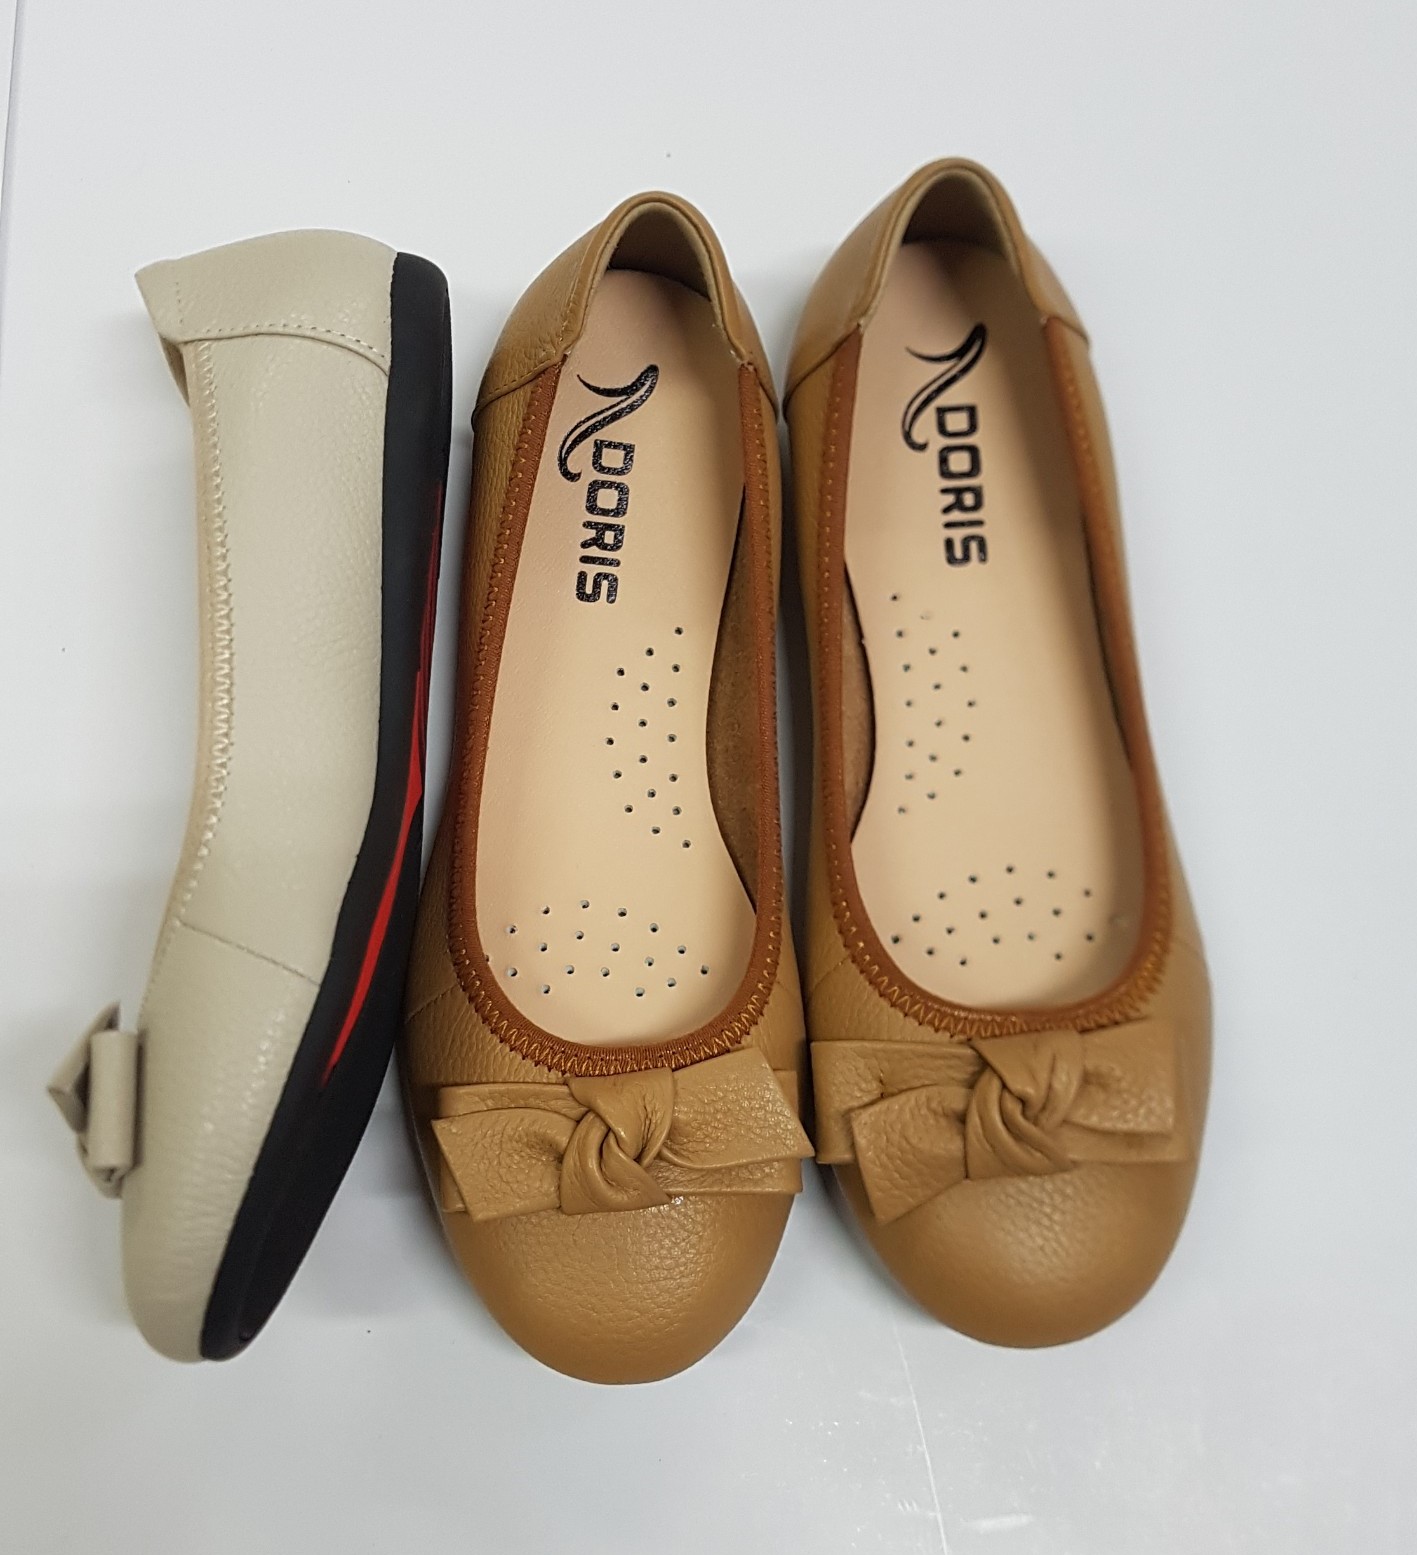 Giày búp bê da thật 𝘾𝙝𝙖𝙣𝙚𝙡 𝘾𝙝𝙖𝙣n𝙚𝙡 cao cấp nhã nhặn thời trang   Shopee Việt Nam